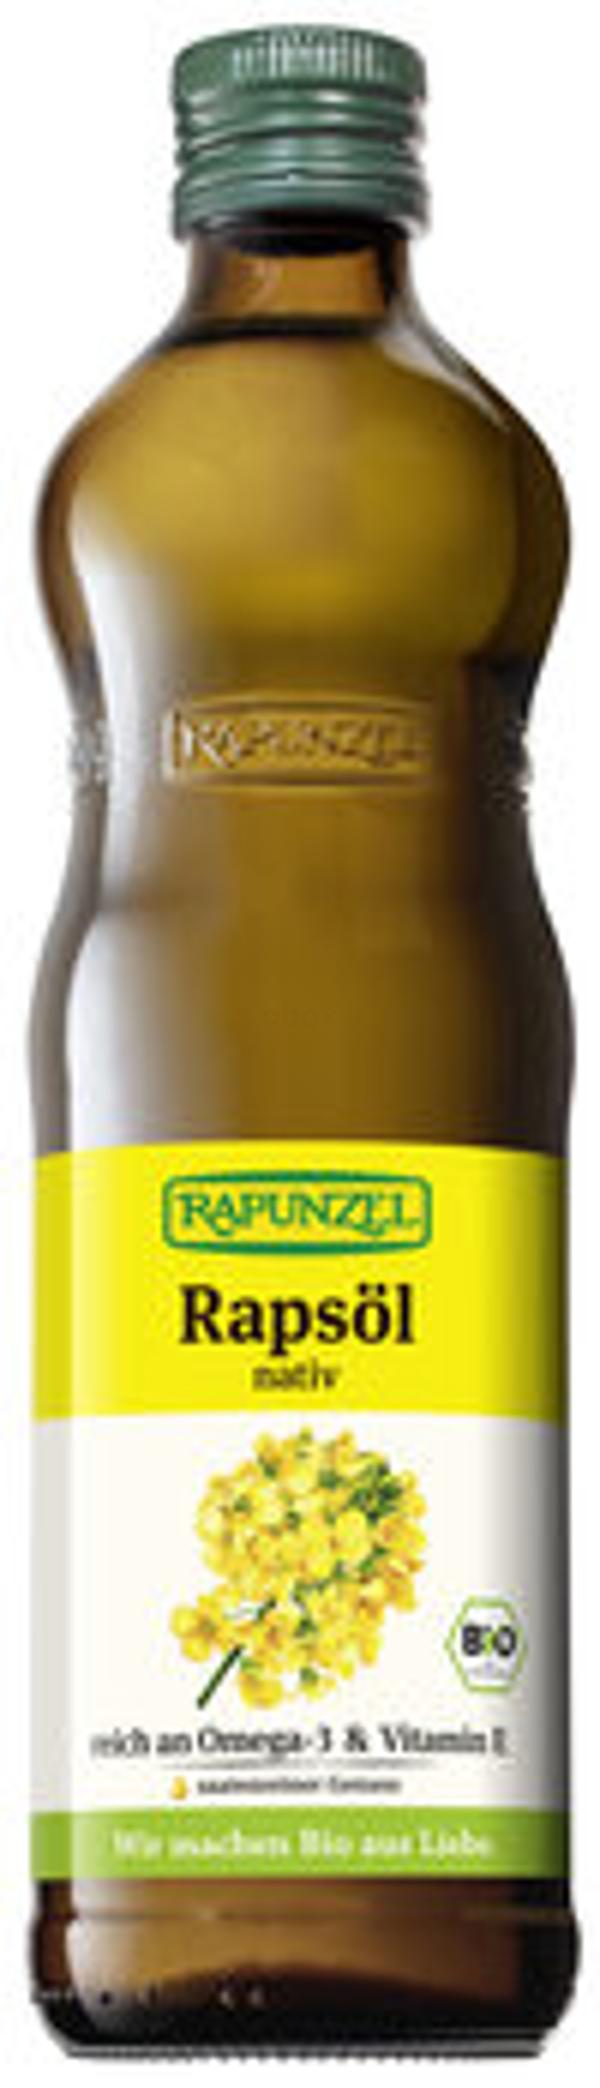 Produktfoto zu Rapunzel Rapsöl nativ - 0,5l